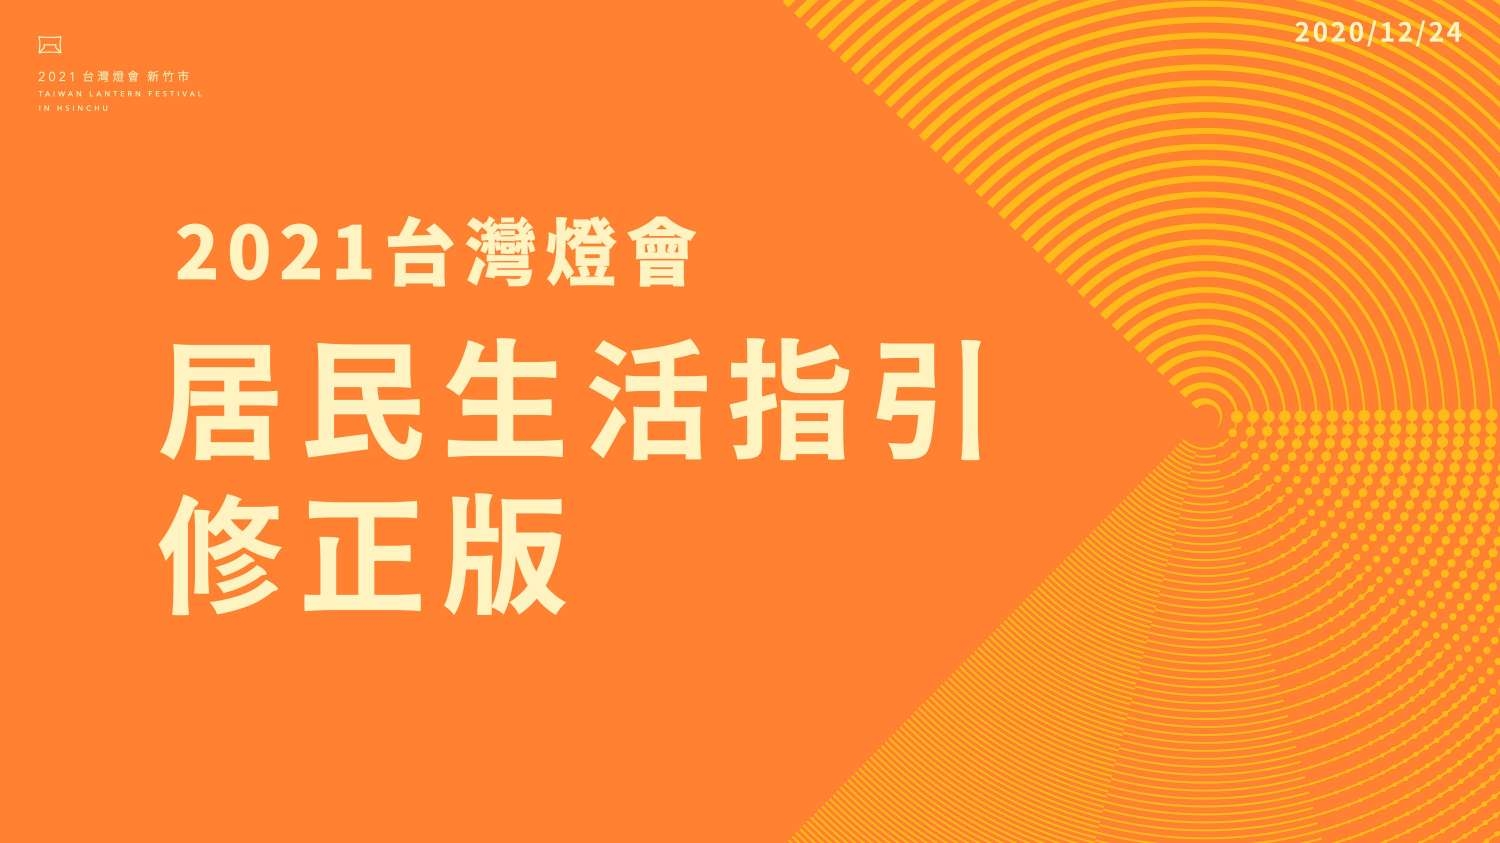 2021台灣燈會居民生活指引修正版EDM01